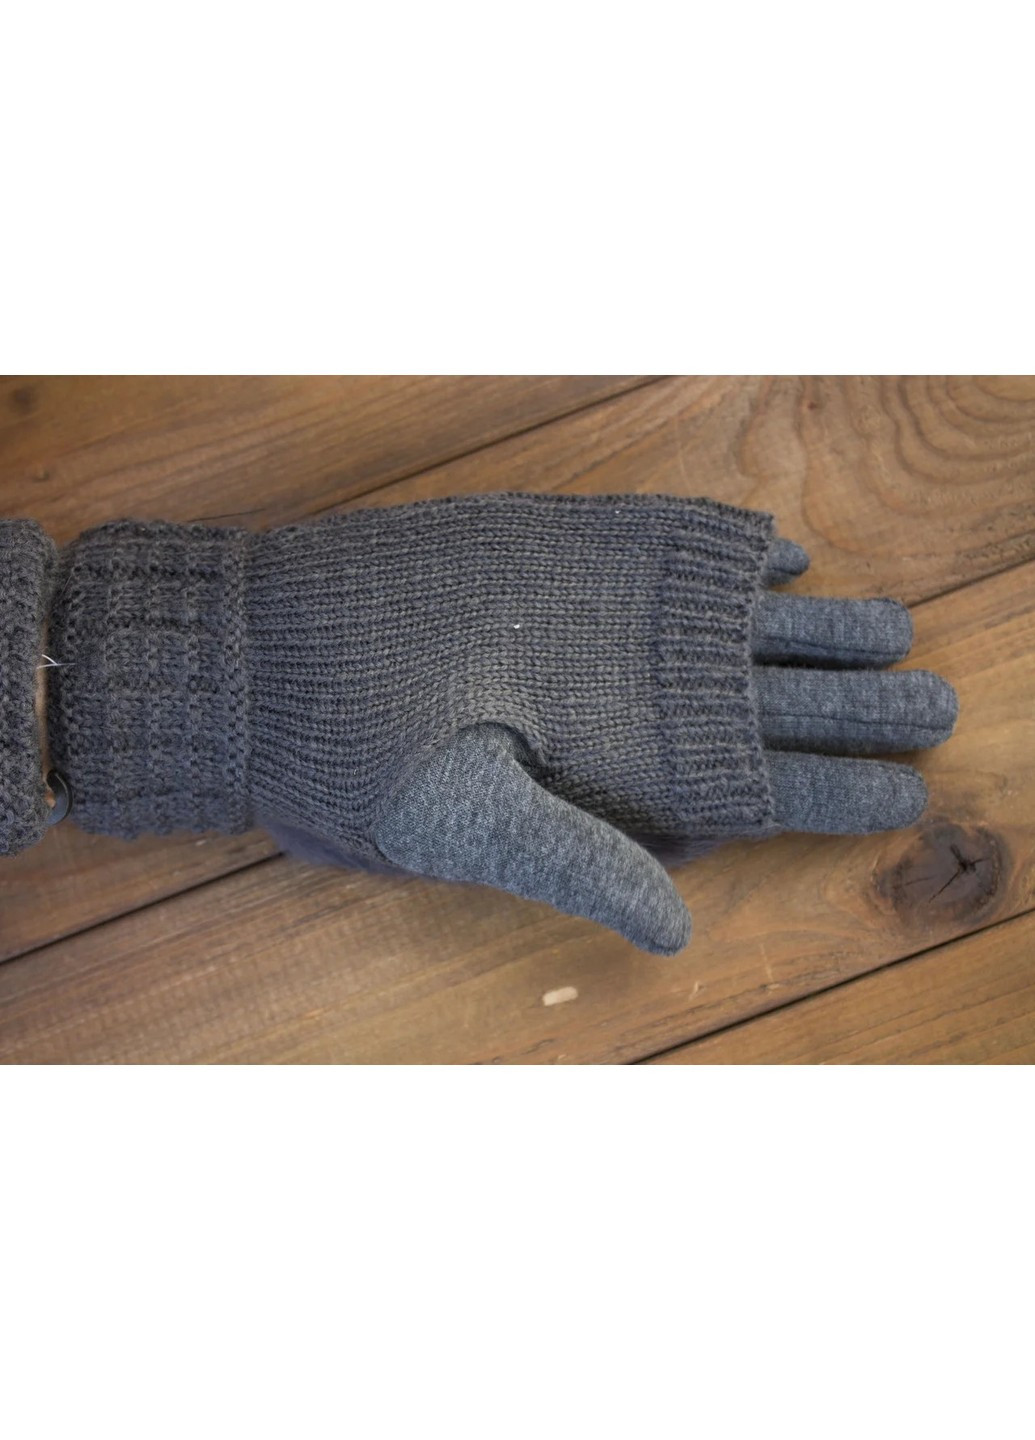 Женские перчатки комбинированные стрейч+вязка серые 1976s1 S BR-S (261771606)